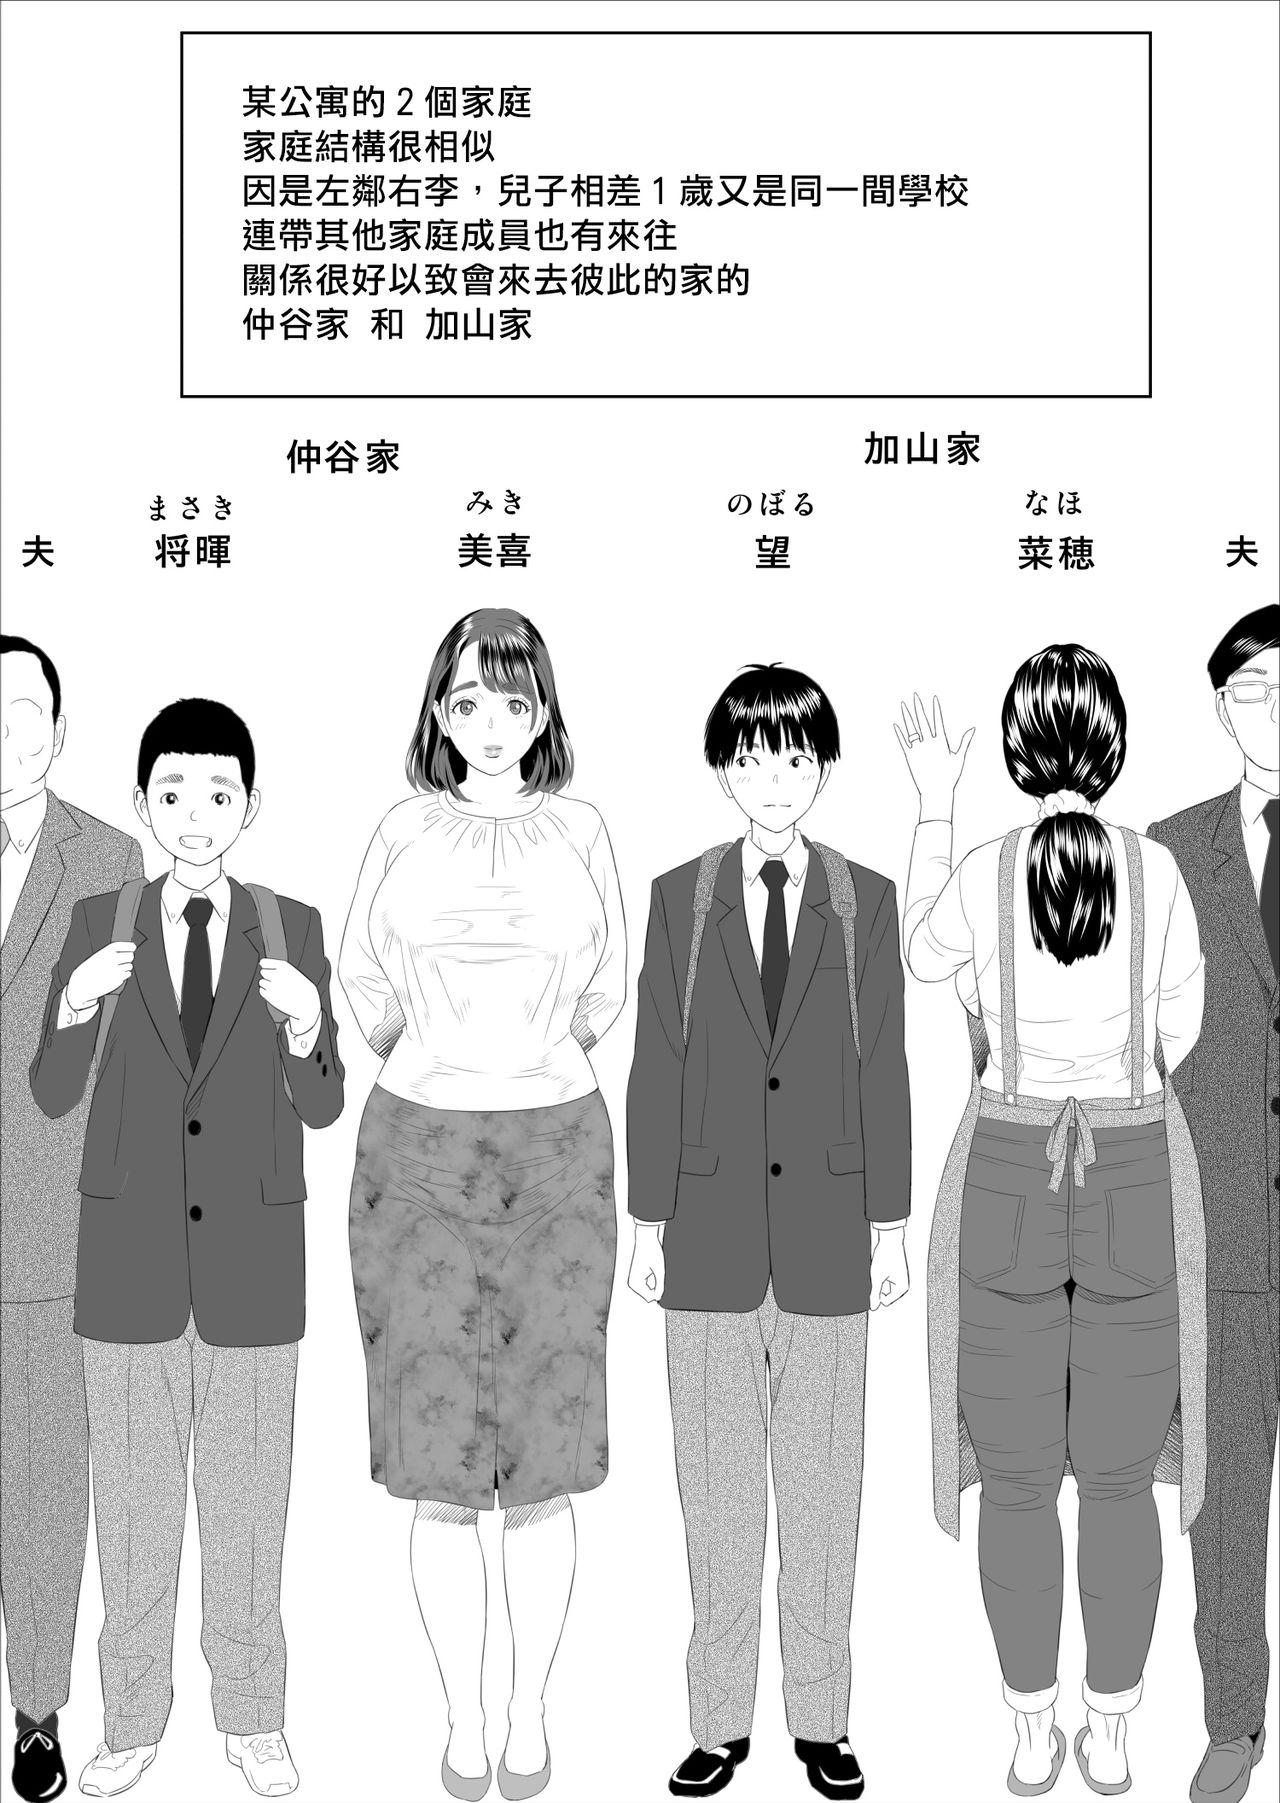 Rubdown Kinjo Yuuwaku Boku ga Tonari no Okaa-san to Konna Koto ni Nacchau Hanashi | 我和鄰居的媽媽發生了這種事篇 - Original Red - Page 2